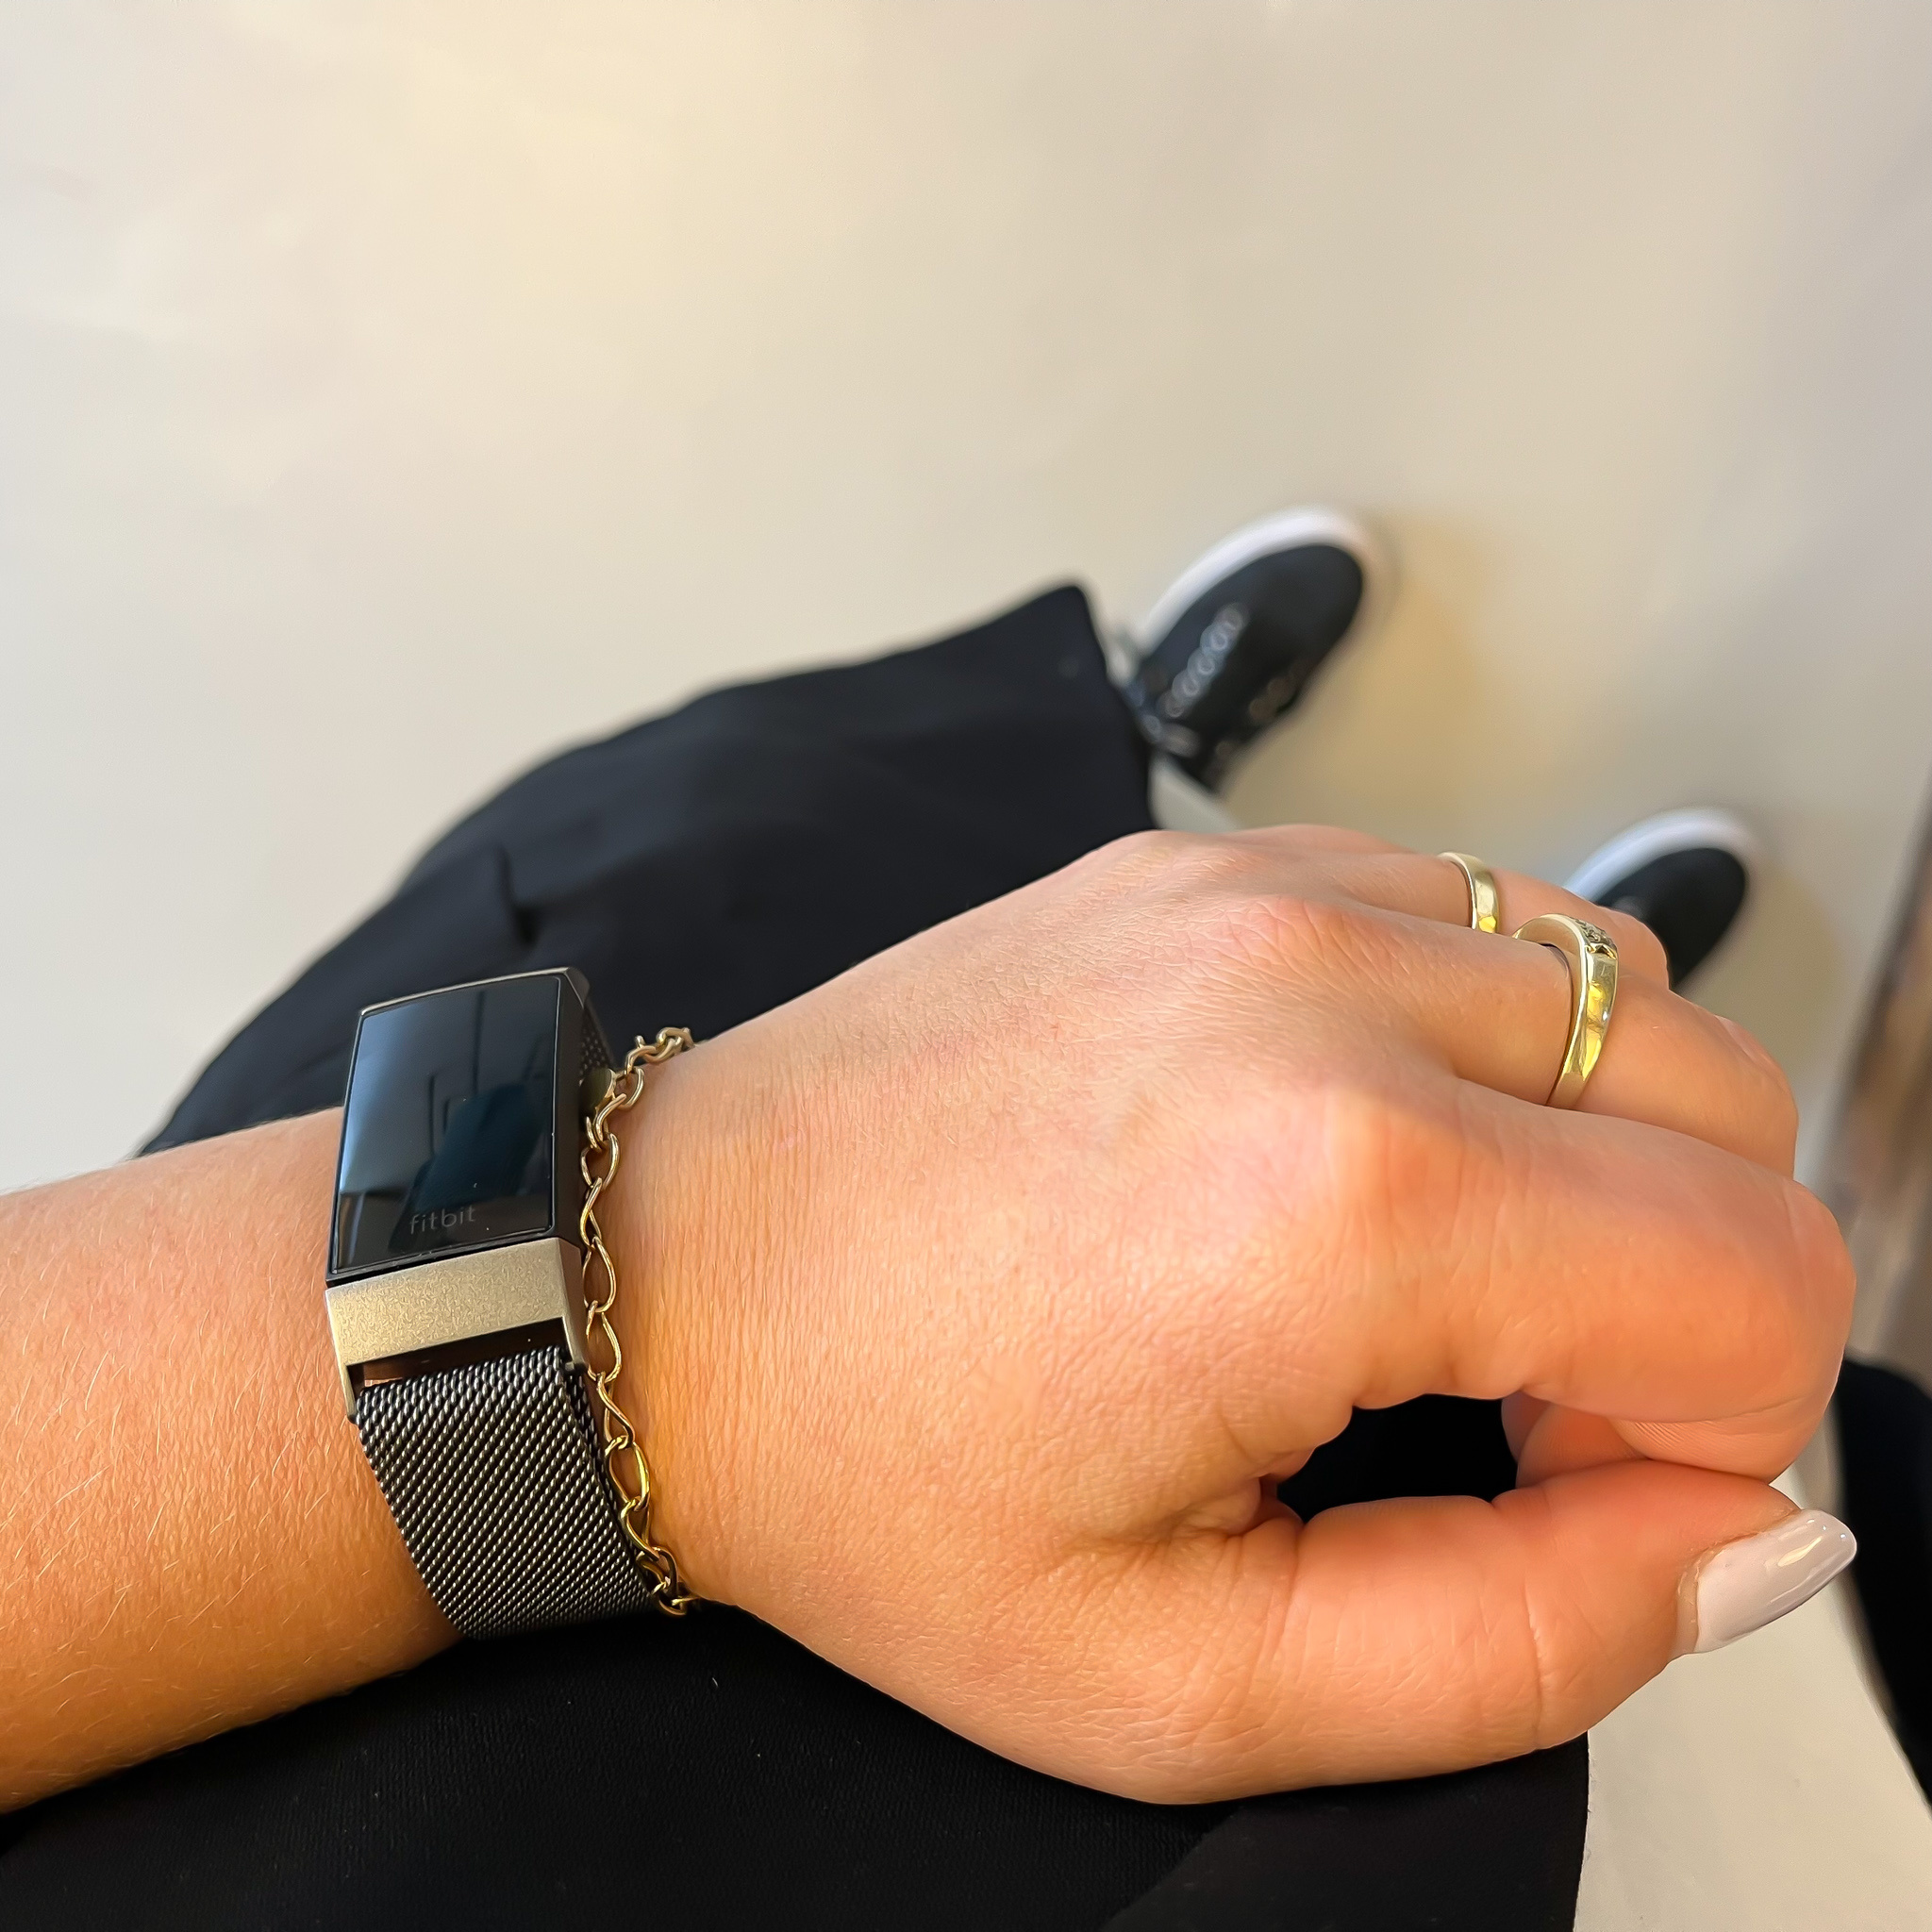 Cinturino loop in maglia milanese per Fitbit Charge 3 & 4 - grigio spazio